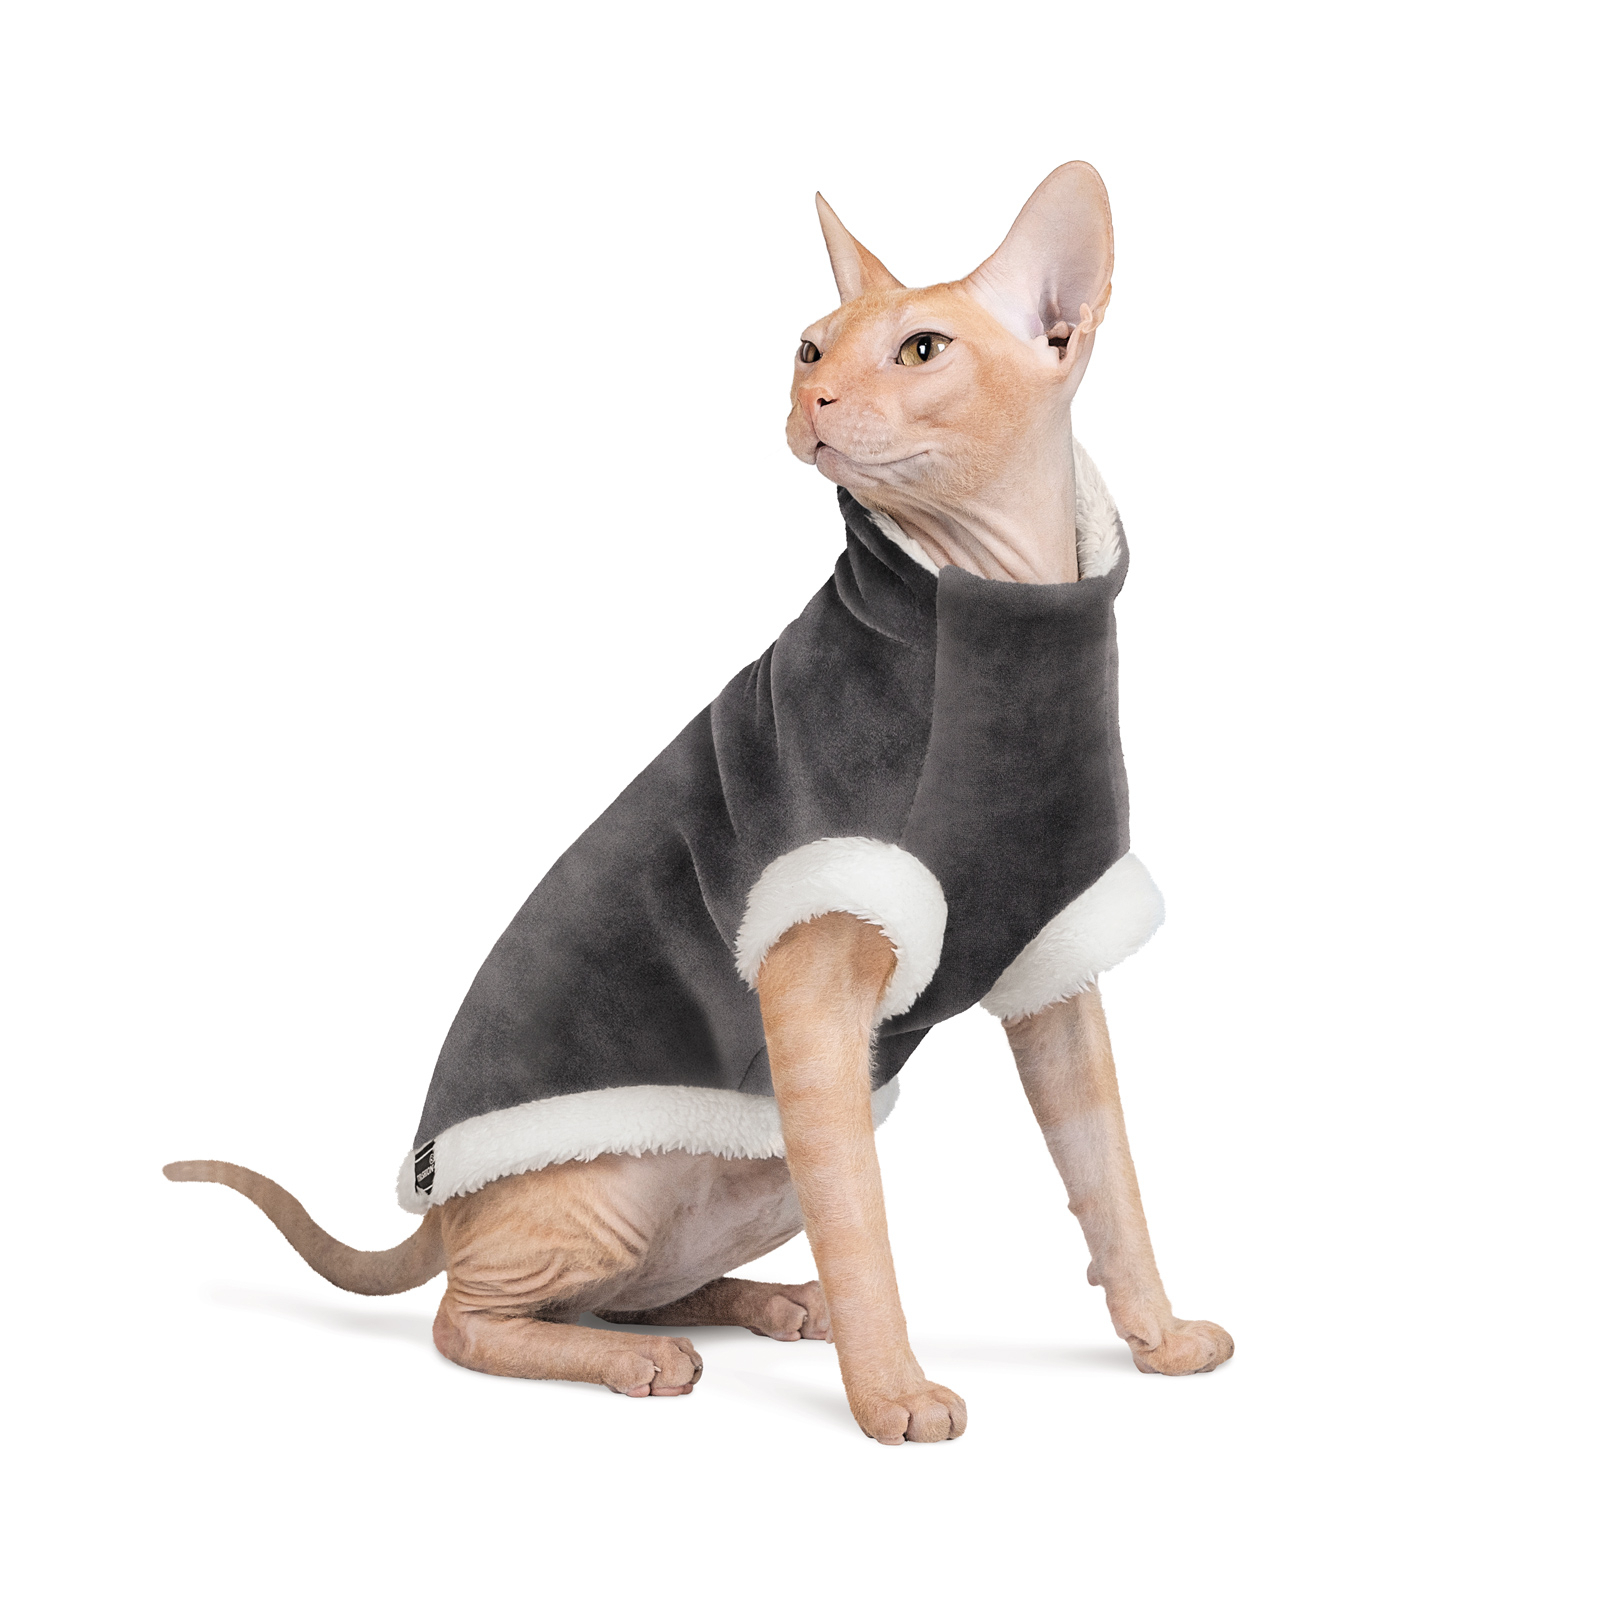 Свитер для животных Pet Fashion TOM L серый (4823082429431)